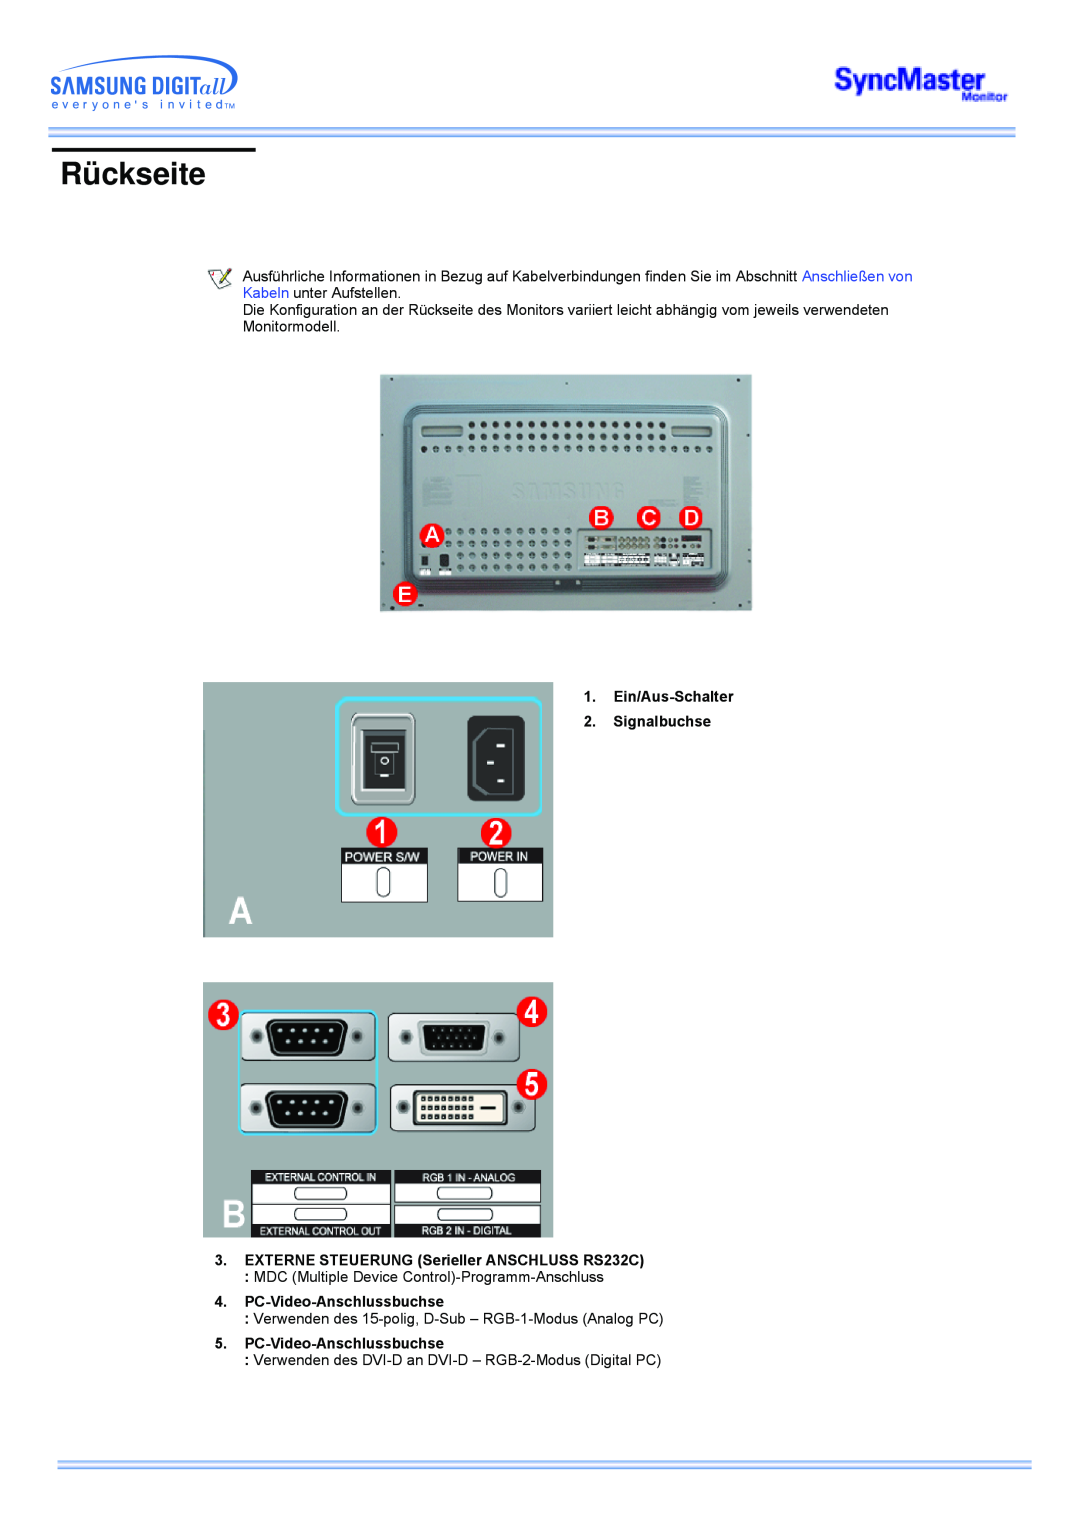 Samsung CK40PSNS/EDC manual Rückseite, Ein/Aus-Schalter 2. Signalbuchse, EXTERNE STEUERUNG Serieller ANSCHLUSS RS232C 